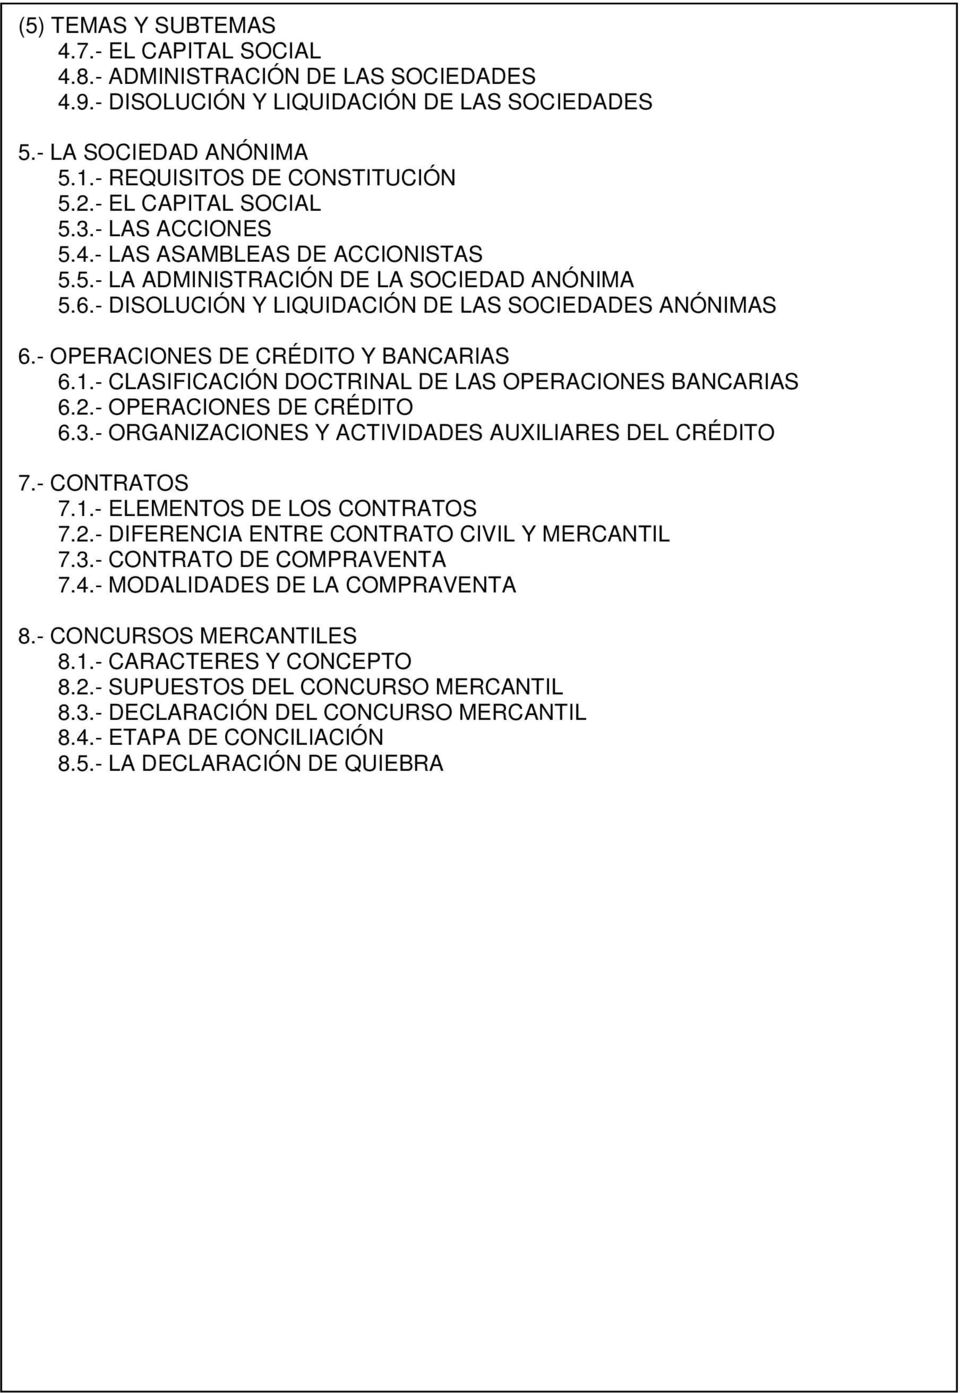 - OPERACIONES DE CRÉDITO Y BANCARIAS 6.1.- CLASIFICACIÓN DOCTRINAL DE LAS OPERACIONES BANCARIAS 6.2.- OPERACIONES DE CRÉDITO 6.3.- ORGANIZACIONES Y ACTIVIDADES AUXILIARES DEL CRÉDITO 7.- CONTRATOS 7.